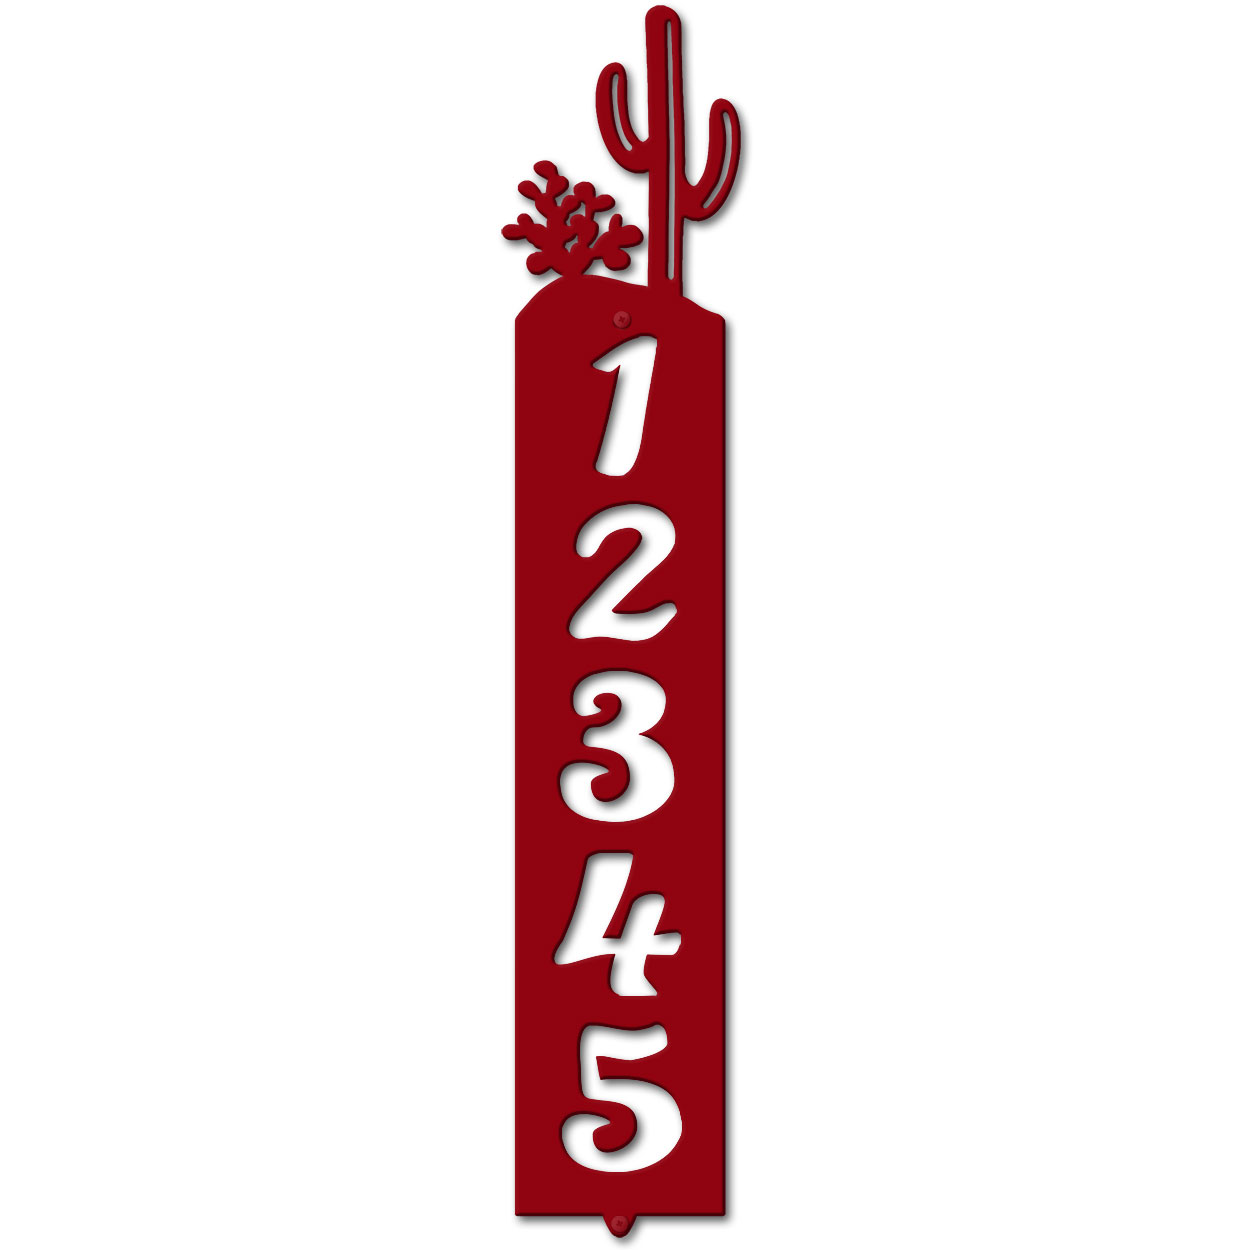 635045 - Cactus Cut Outs Five Digit Address Number Plaque